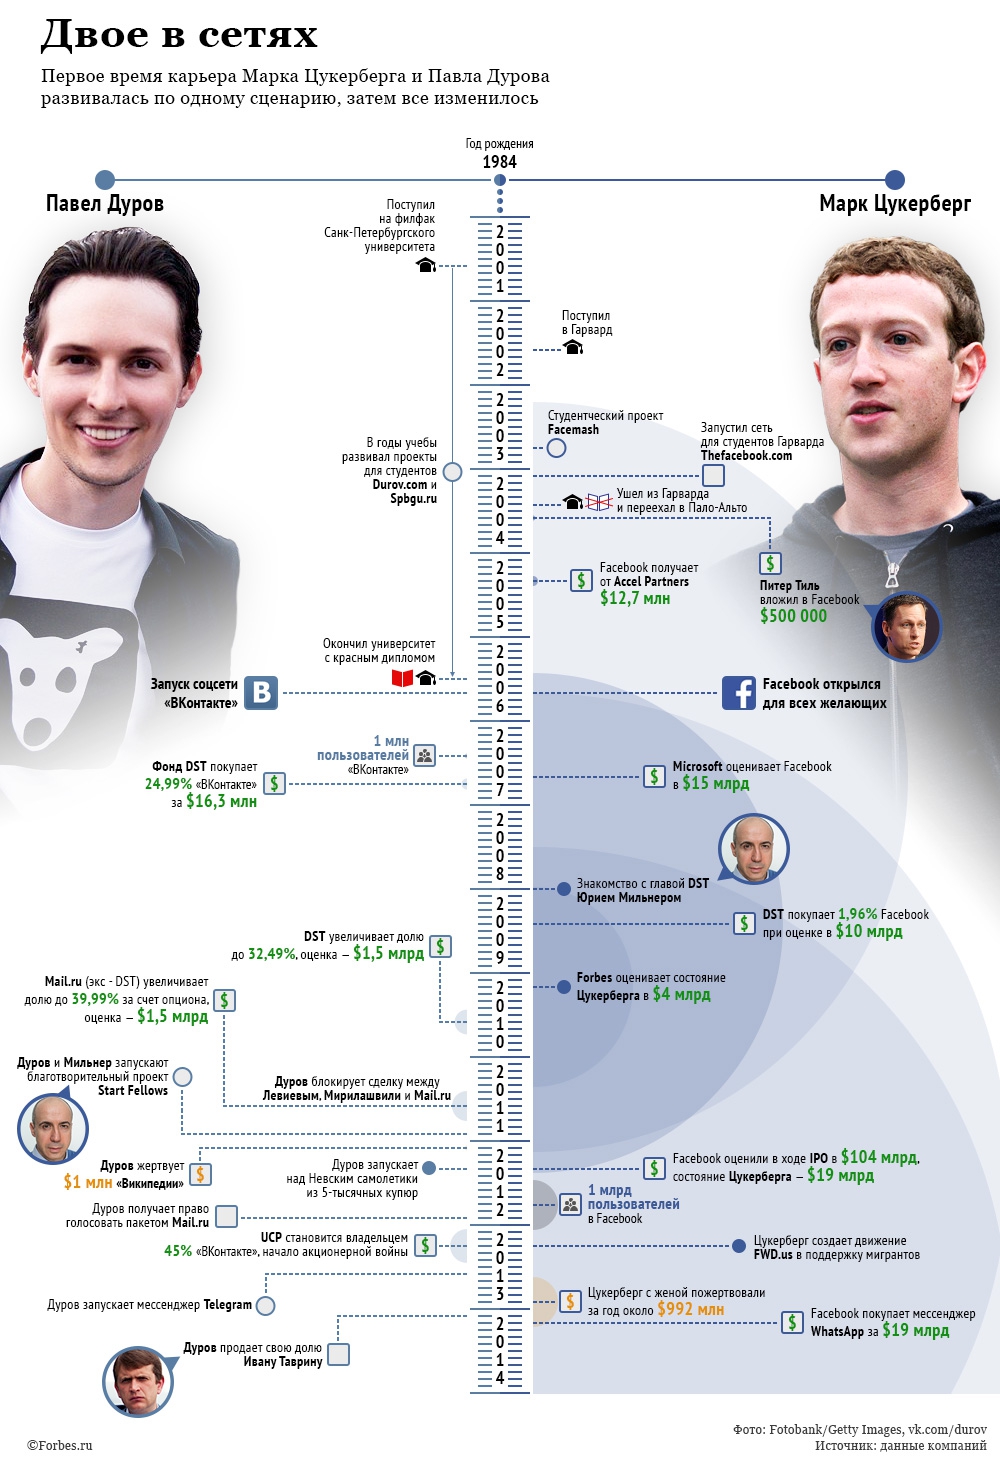 Російський Forbes підготував інфографіку, в якій порівняв Дурова та Цукерберга